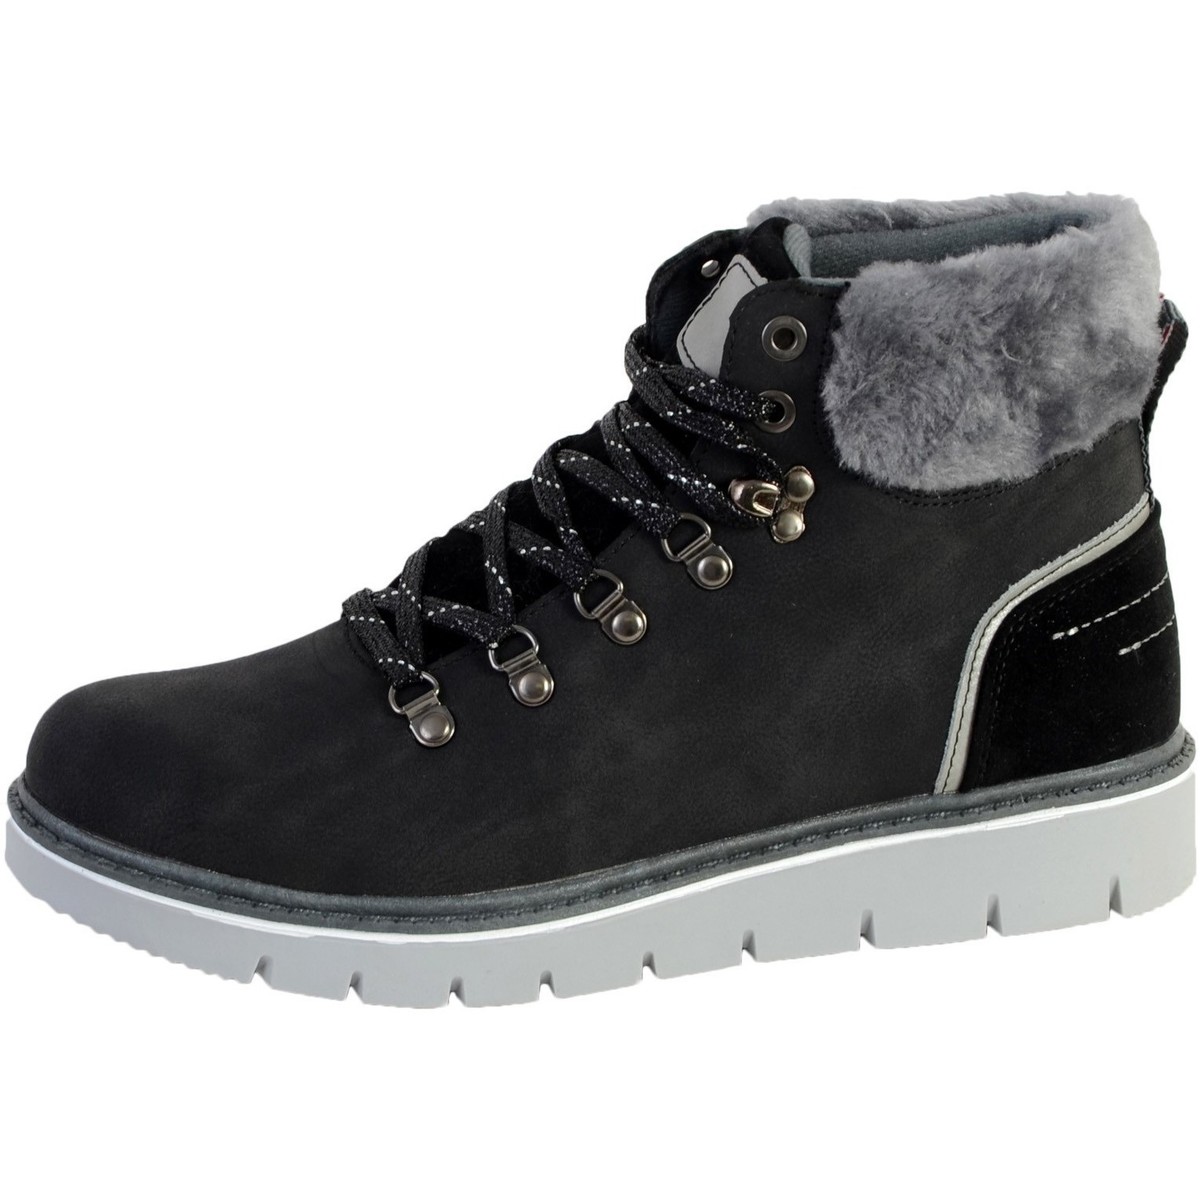 Chaussures Femme Boots KLEIN ASH Sneakers mit Schnürung Weißry Boots KLEIN CI3862 Noir